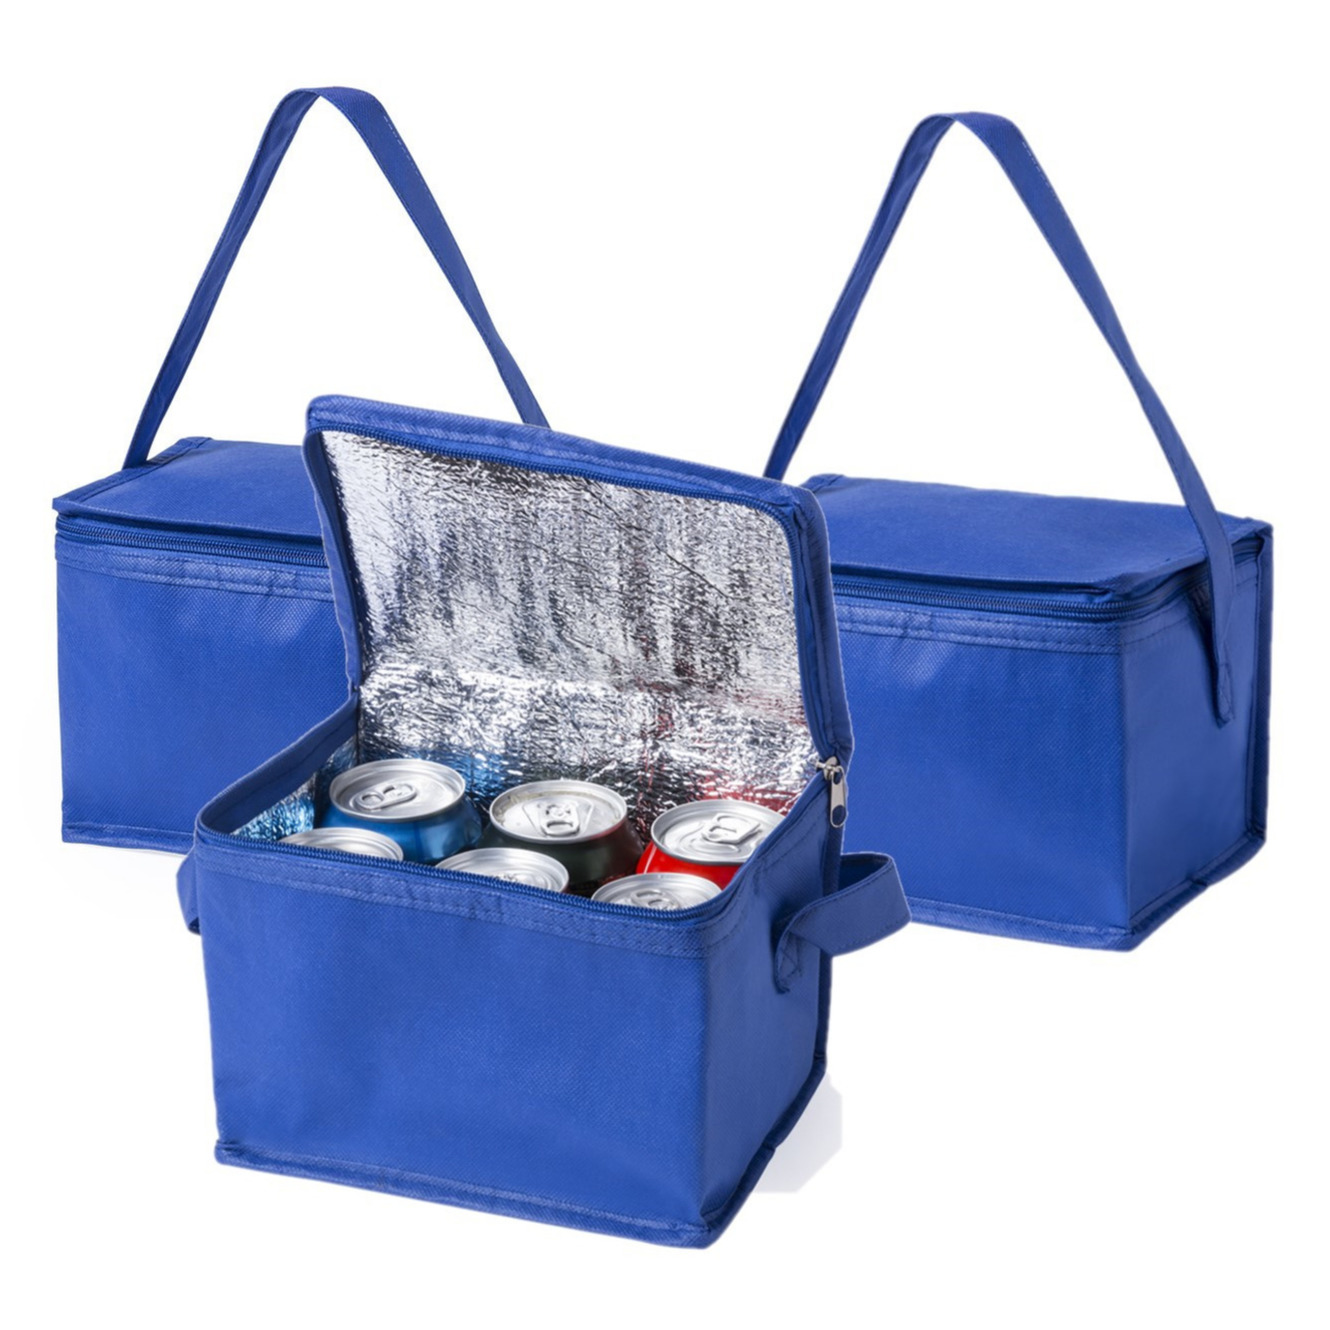 5x stuks kleine mini  koeltassen blauw sixpack blikjes - Compacte koelboxen/koeltassen en elementen